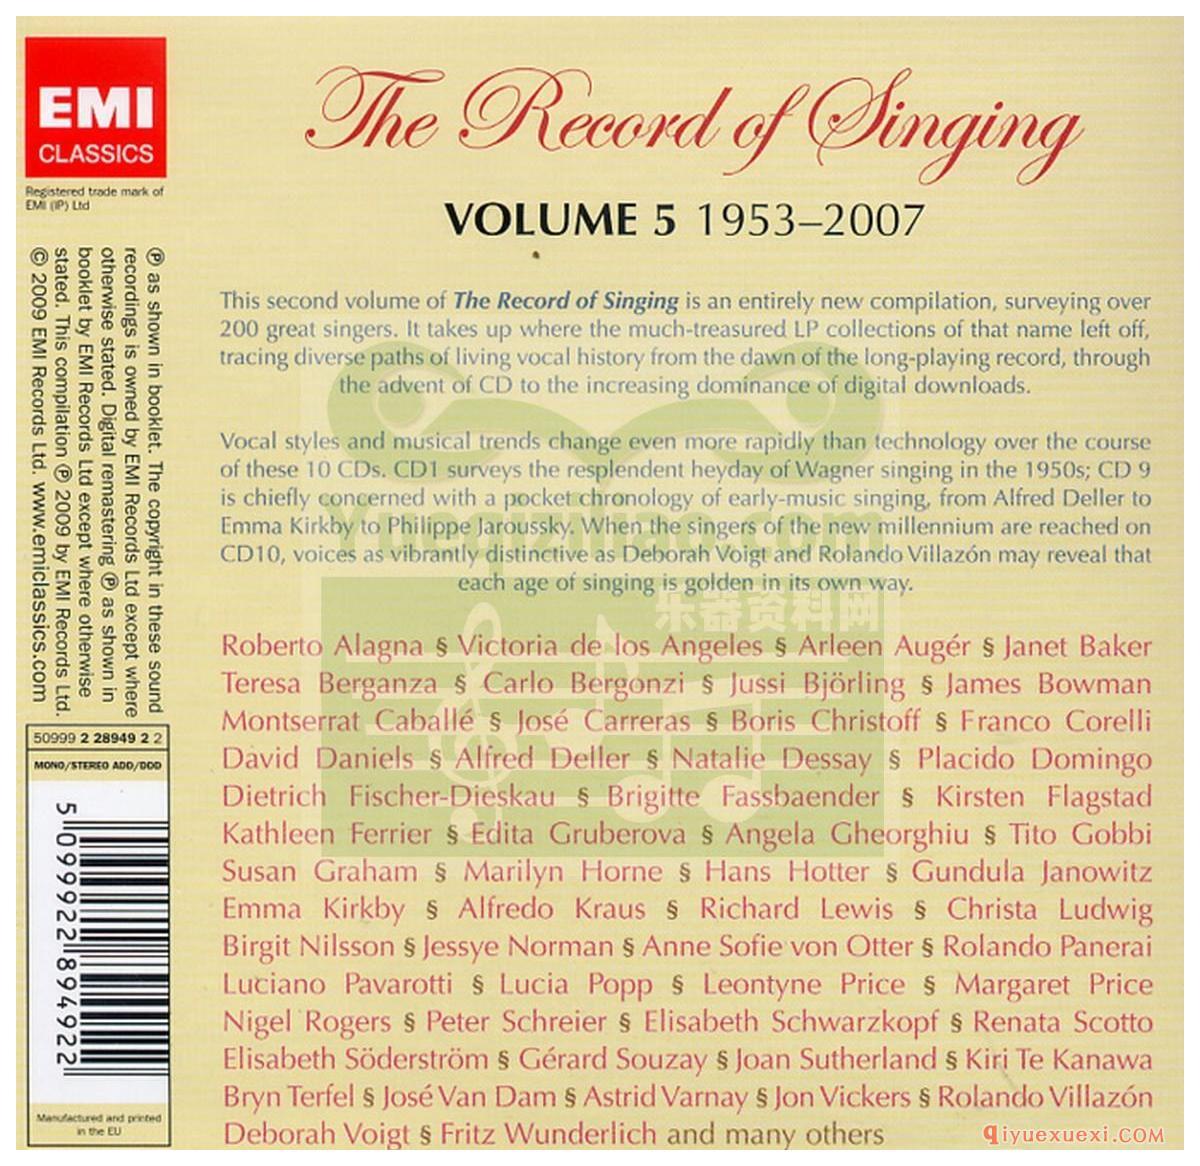 歌剧录音下载 | The Record of Singing 1953-2007 (Volume 5)FLAC专辑